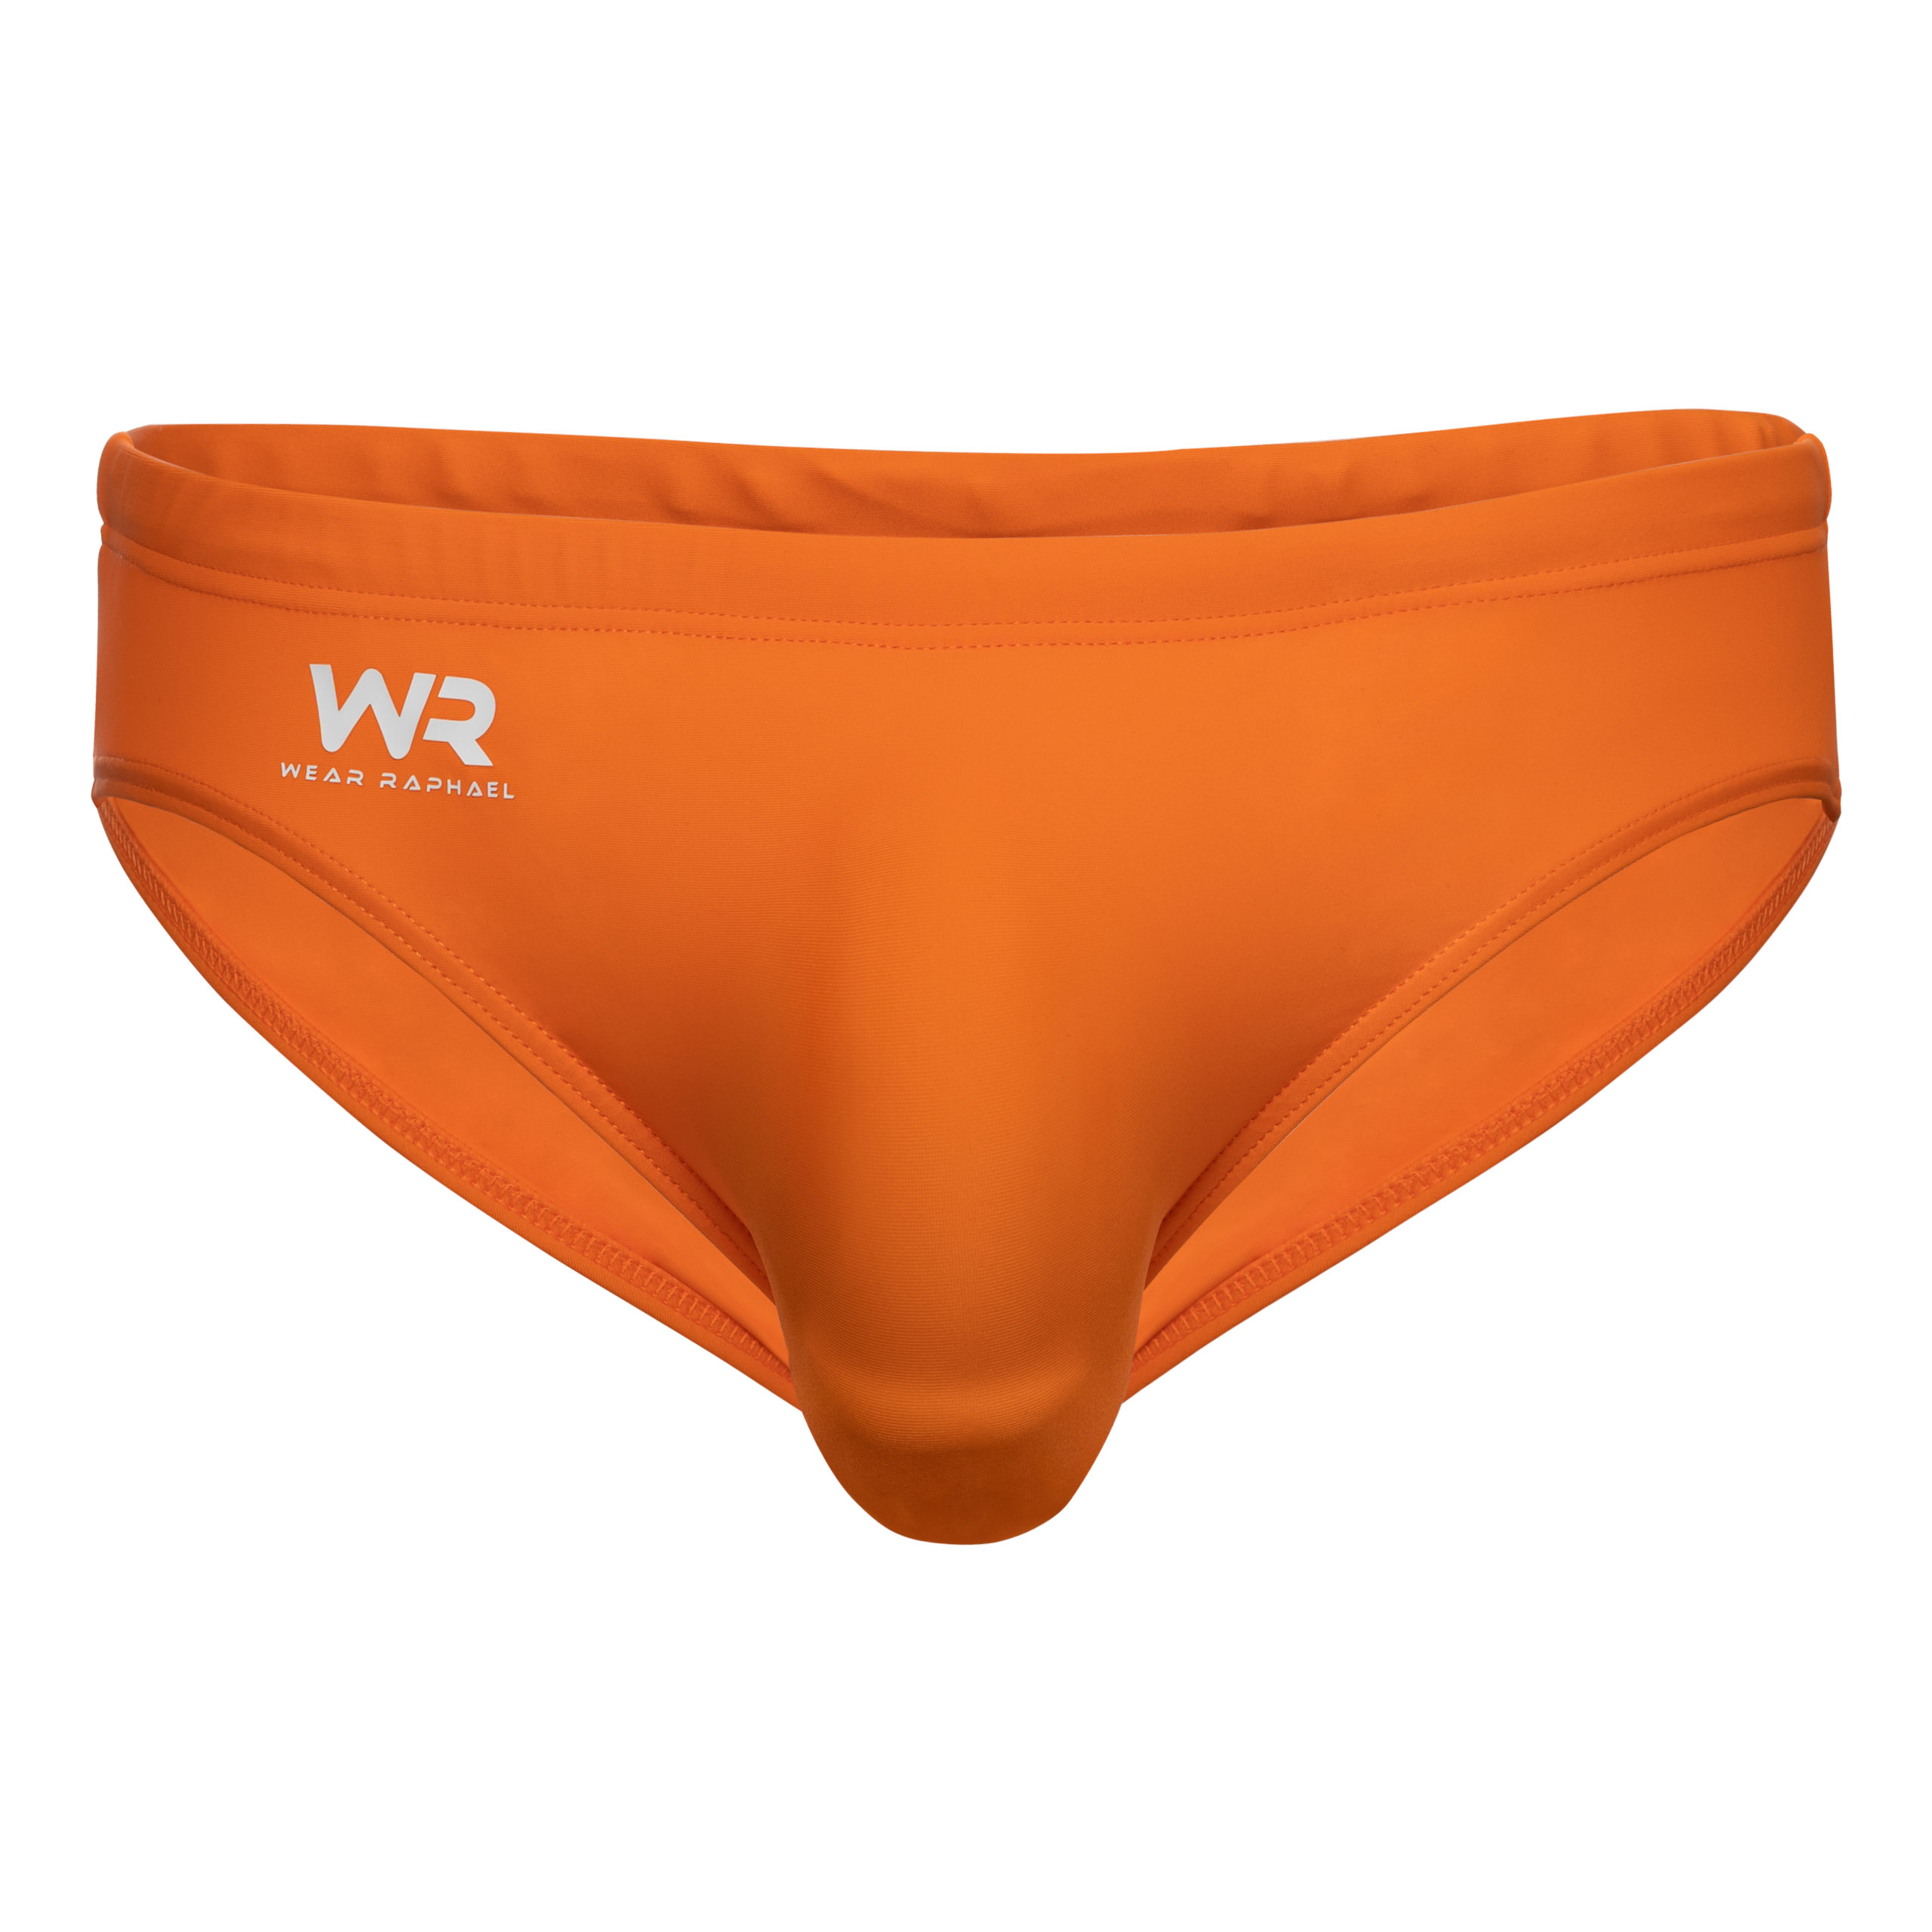 WearRaphael – mens underwear shop